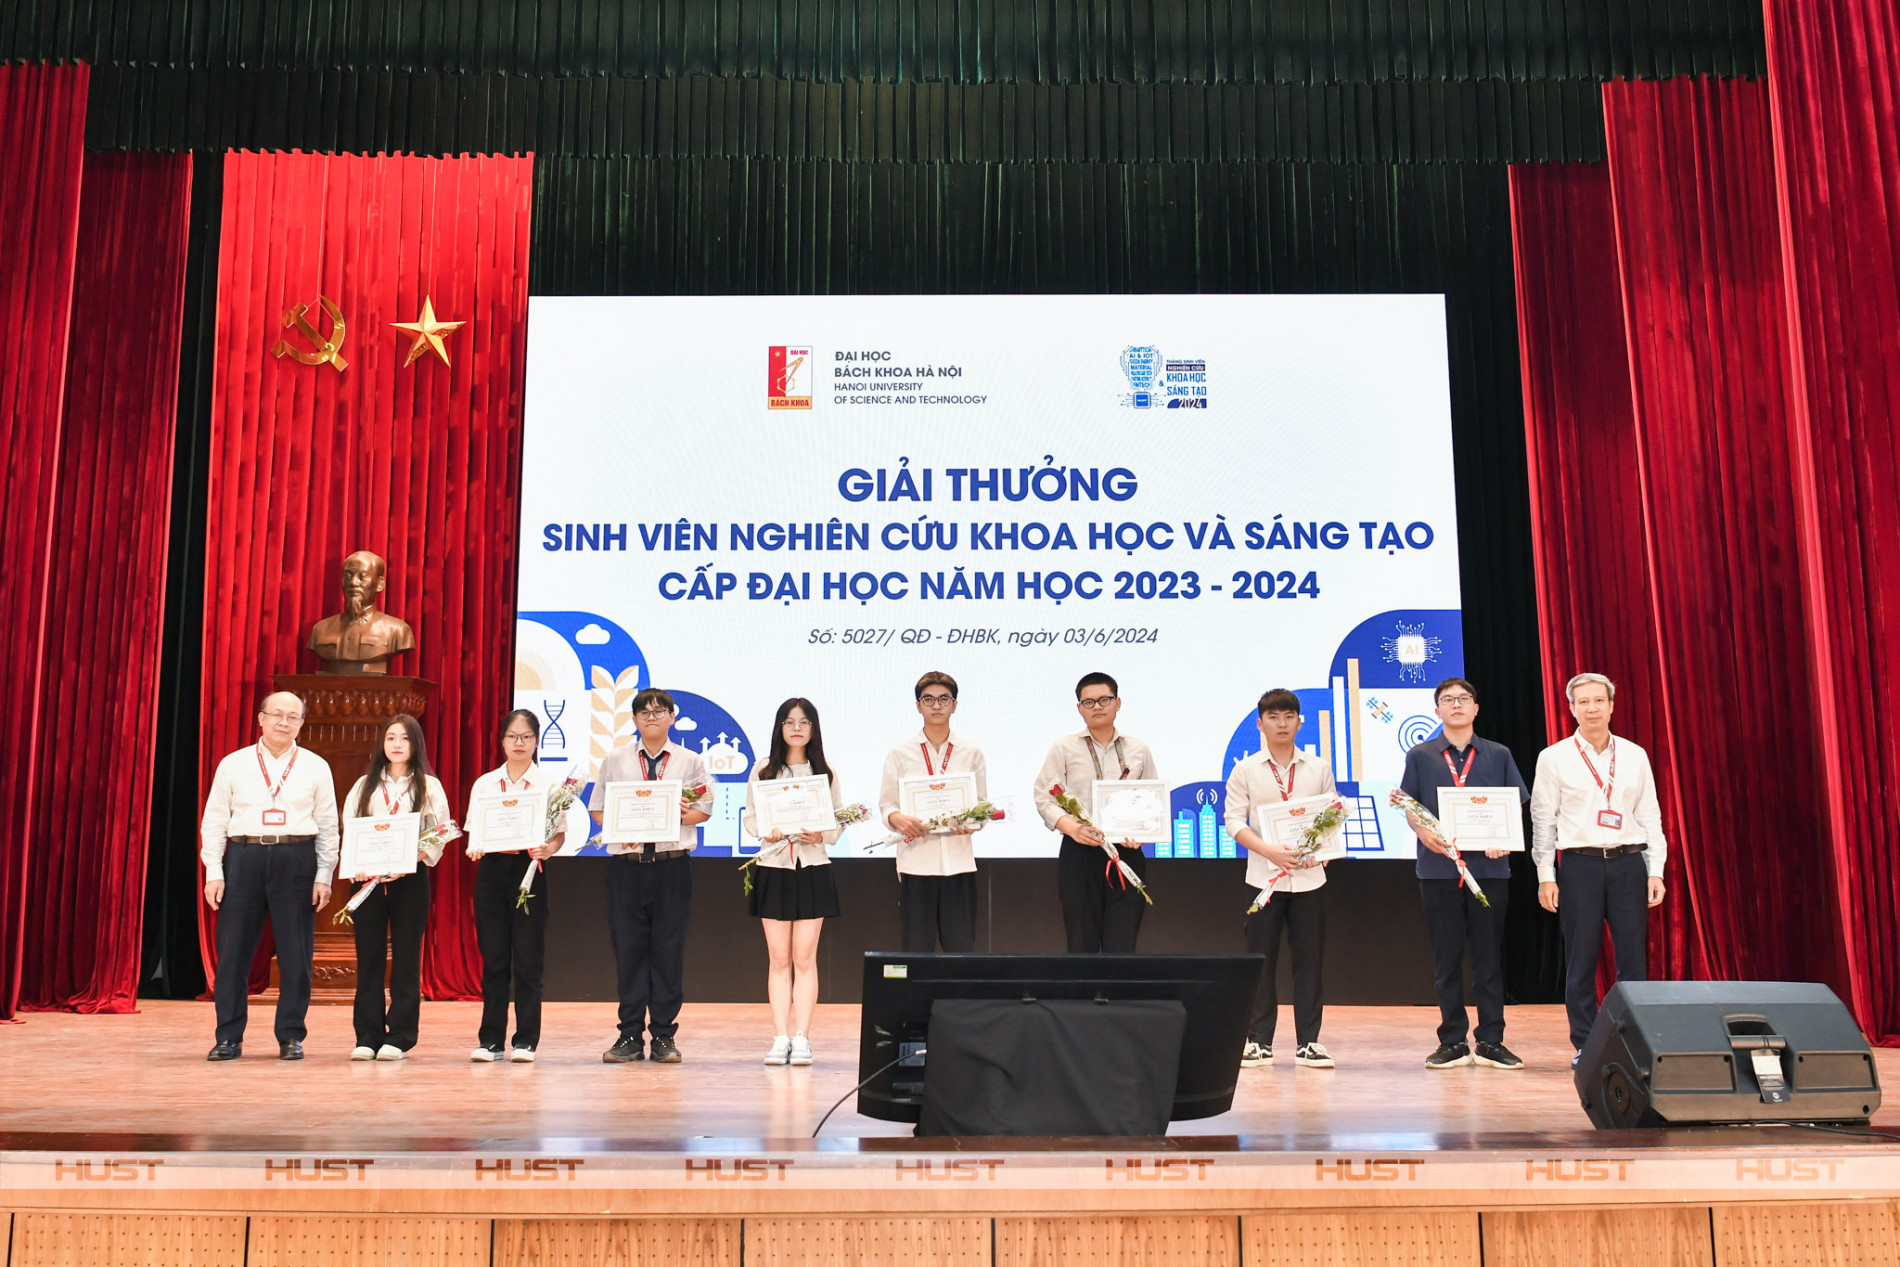 Nhóm trưởng Trần Hà Giang - K65 Khoa Vật lý Kỹ thuật (thứ ba từ phải sang) đại diện nhóm nhận giải Nhất Hội nghị Sinh viên NCKH lần thứ 41